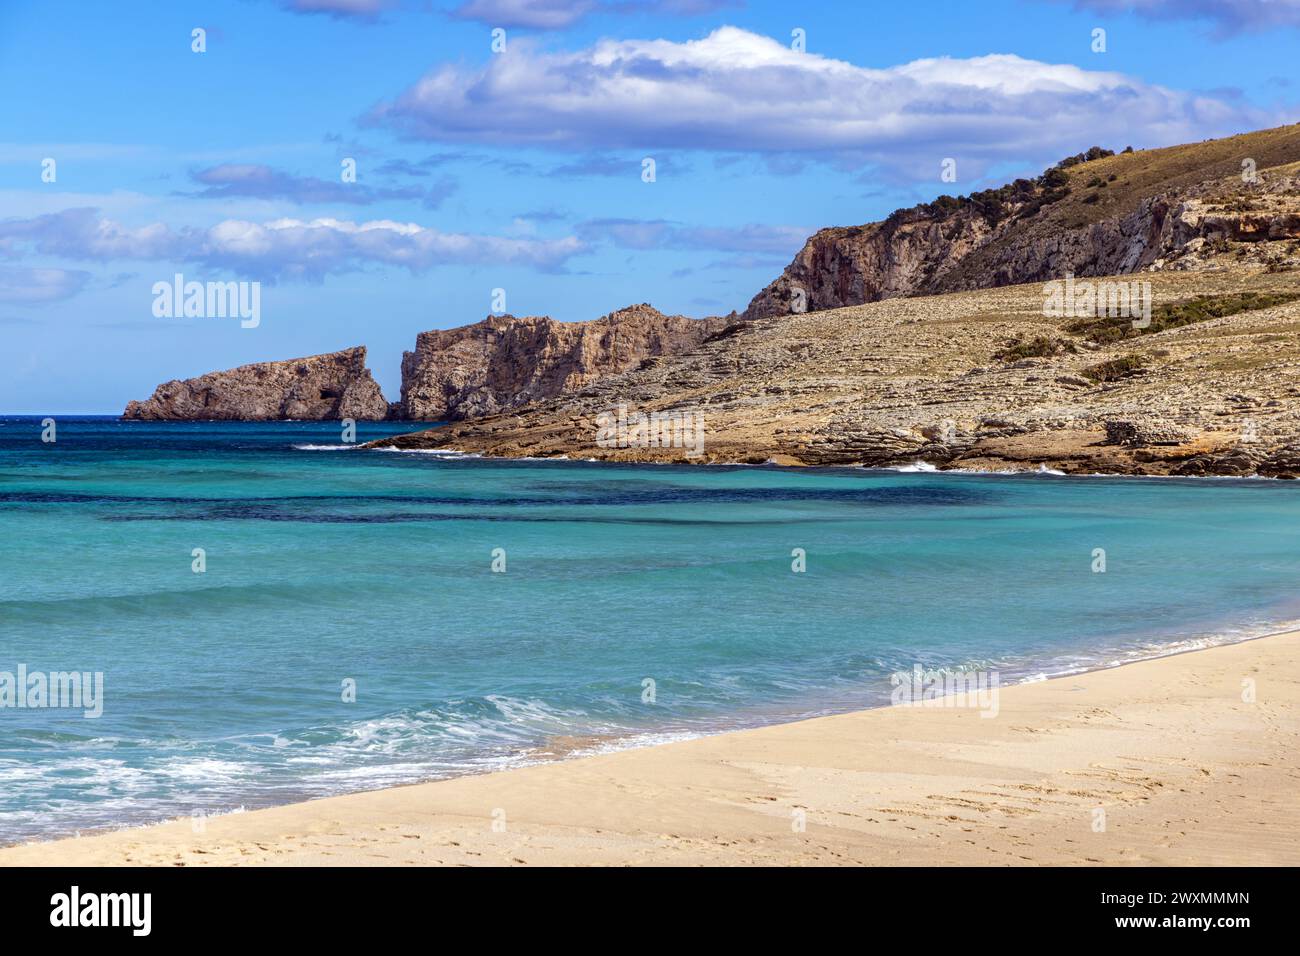 La belle plage de sable à Cala Mesquida, Majorque, Îles Baléares, Espagne Banque D'Images